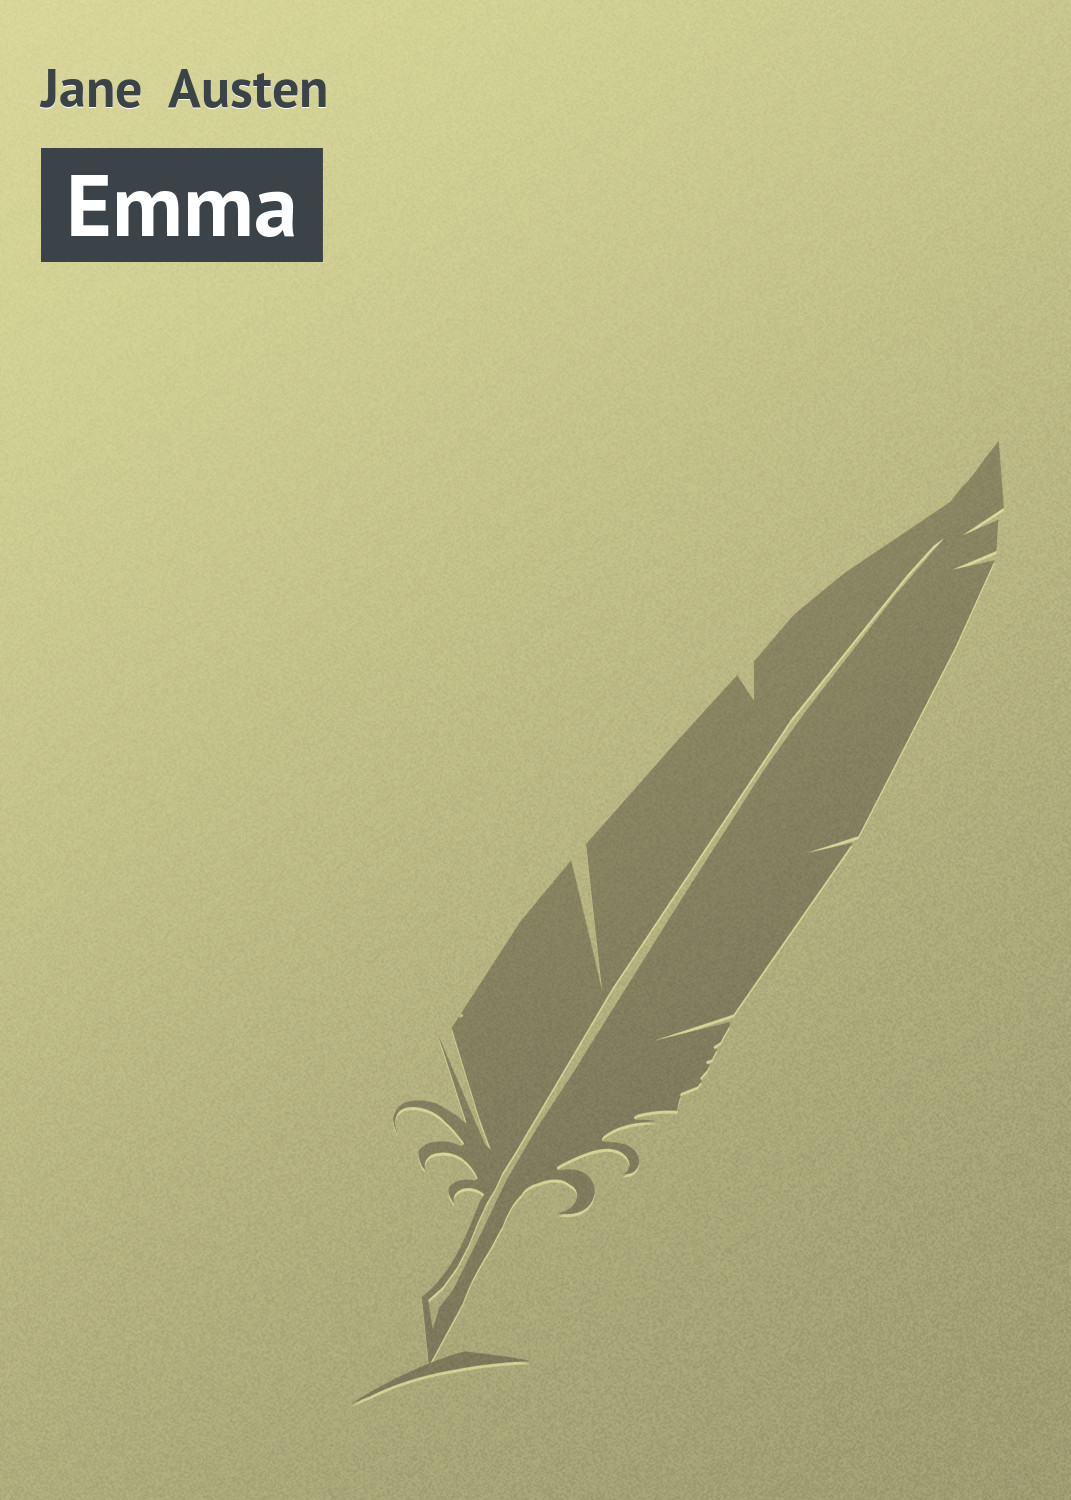 Книга Emma из серии , созданная Jane Austen, может относится к жанру Зарубежная старинная литература, Зарубежная классика. Стоимость электронной книги Emma с идентификатором 21103630 составляет 5.99 руб.